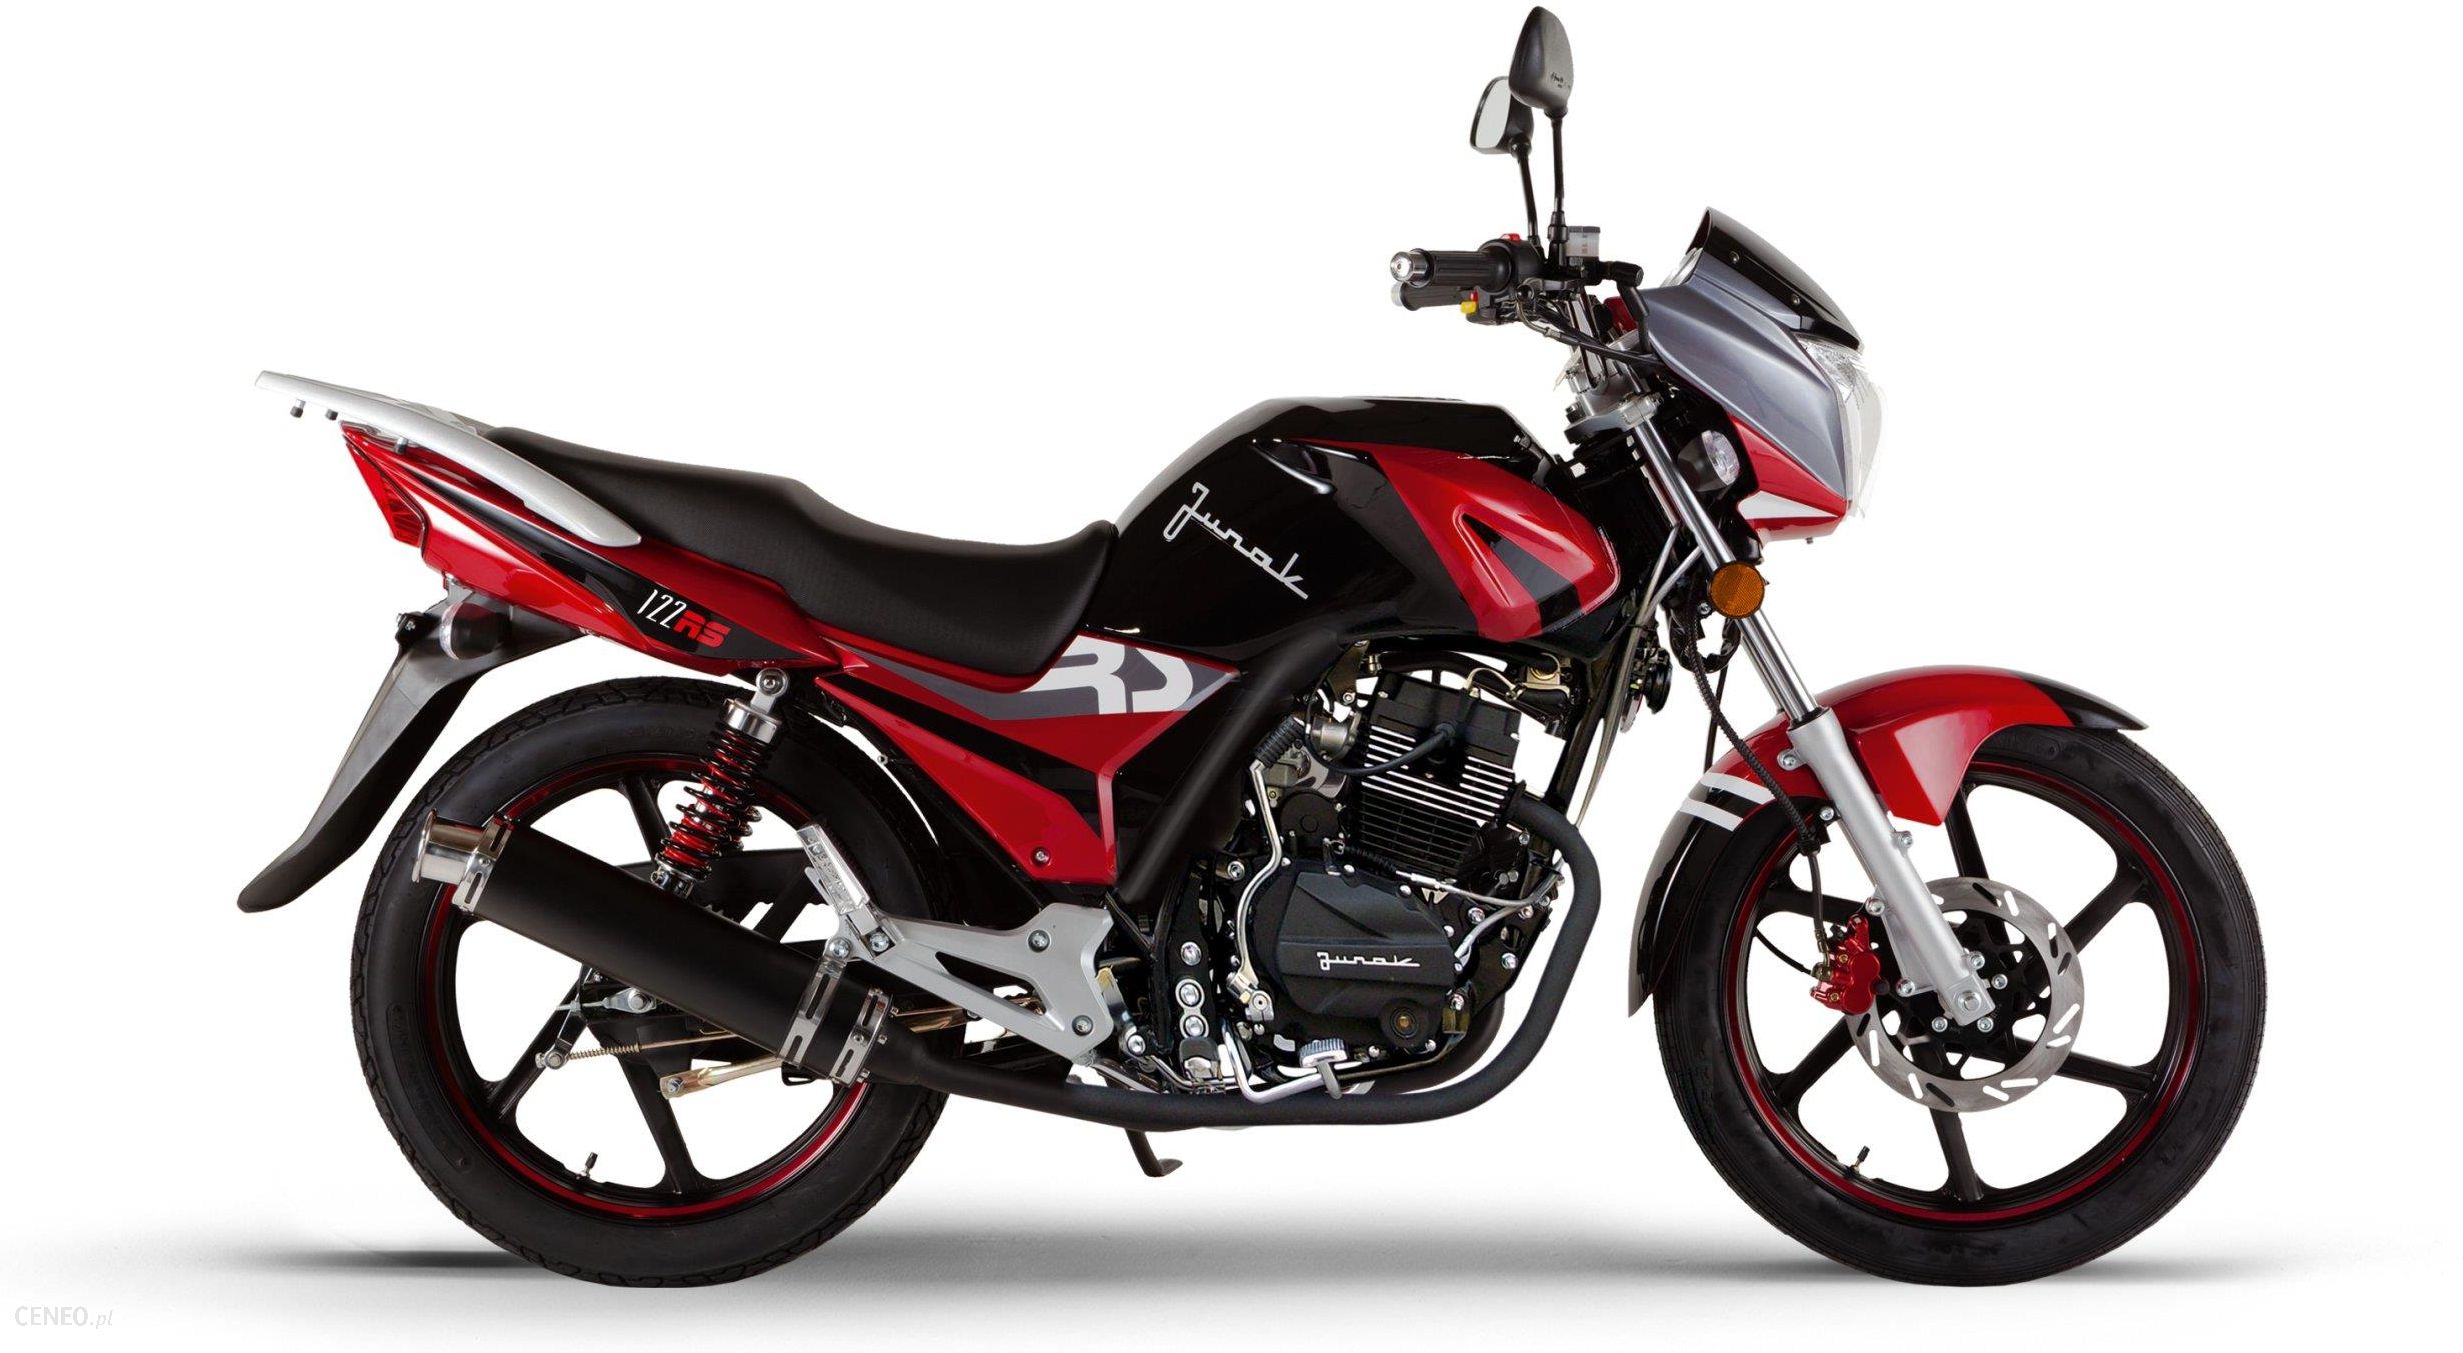 Motocykl Junak 122 RS 125, kask i transp gratis Opinie i